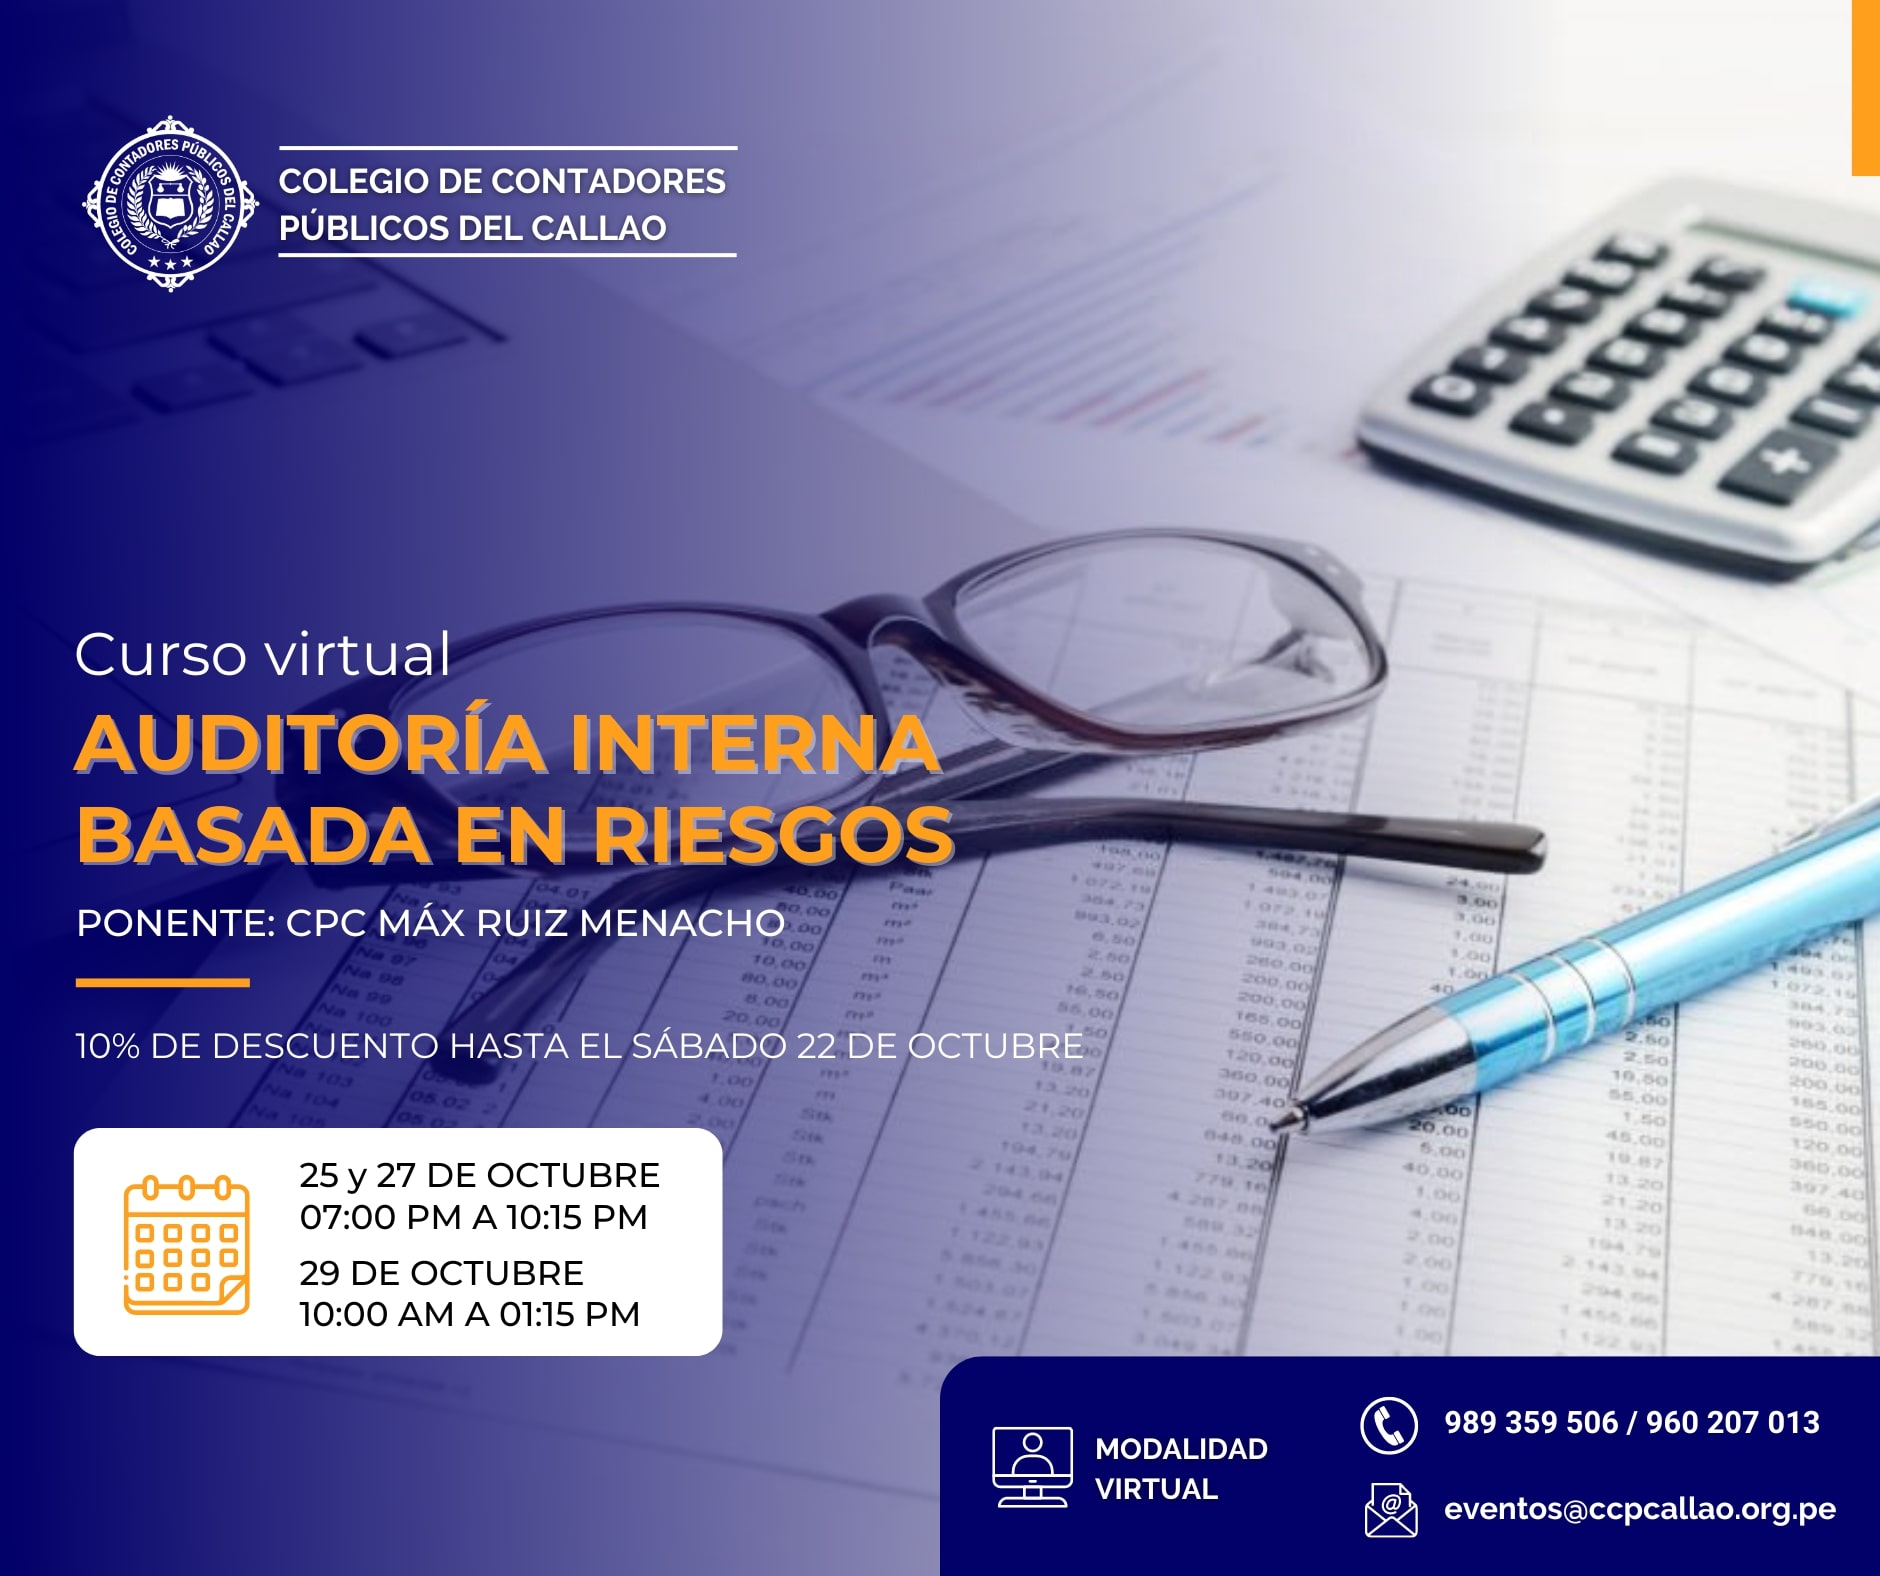 Curso Virtual "AUDITORÍA INTERNA BASADA EN RIESGOS"